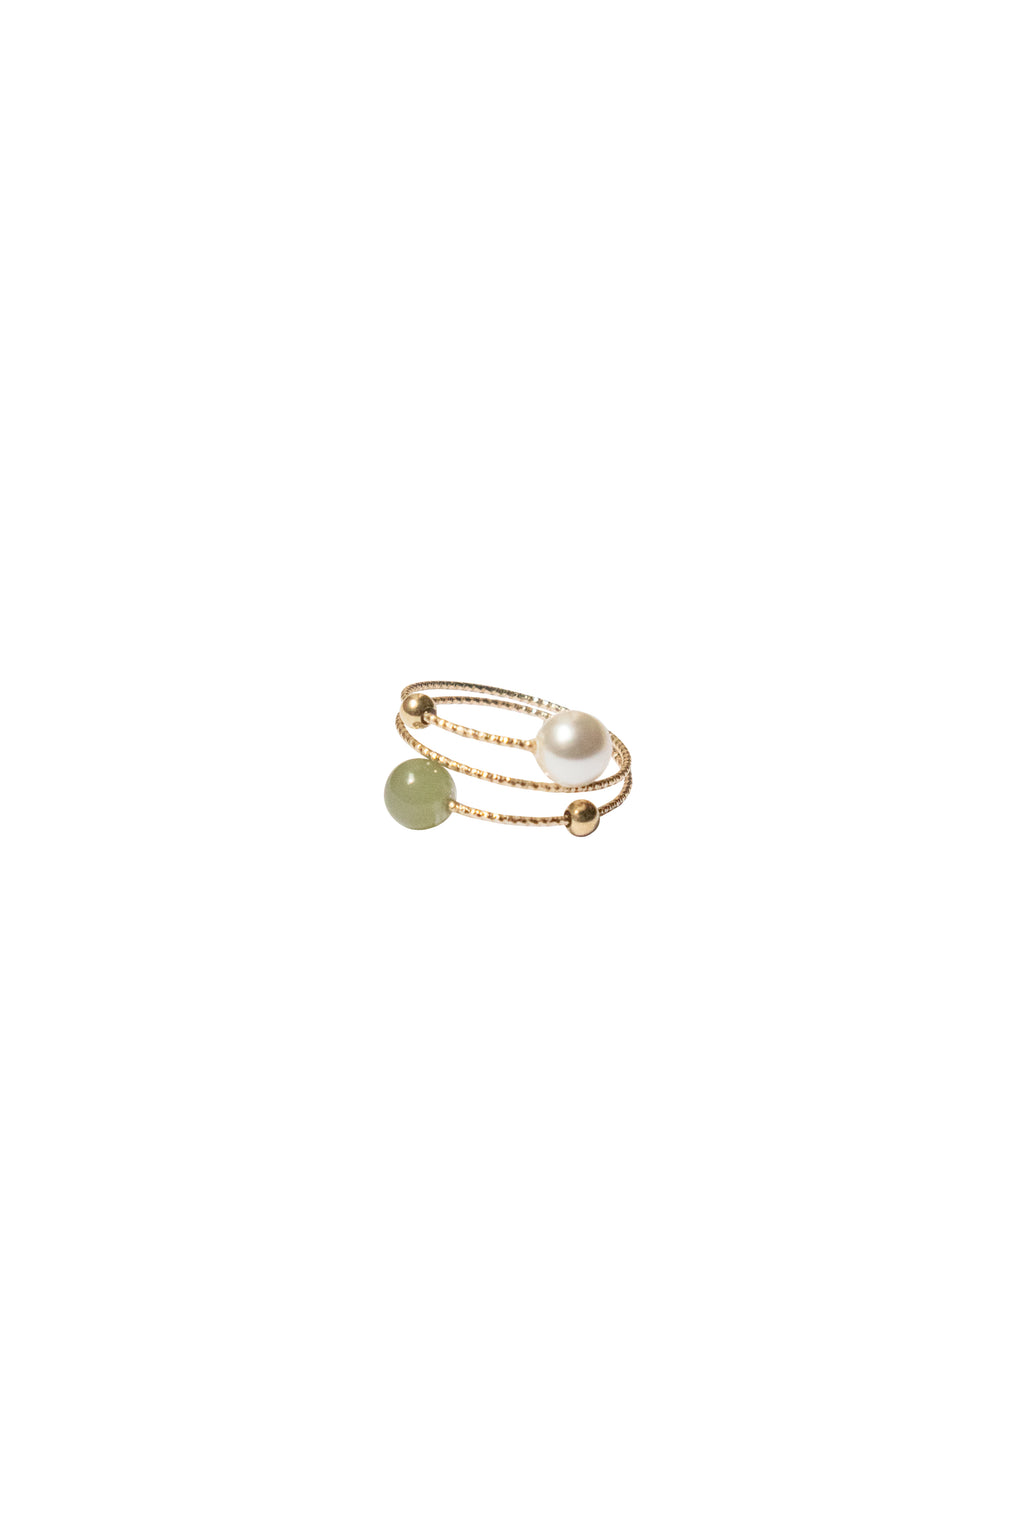 seree-alyssa-adjustable-skinny-ring-nephrite-green-jade-faux-pearl